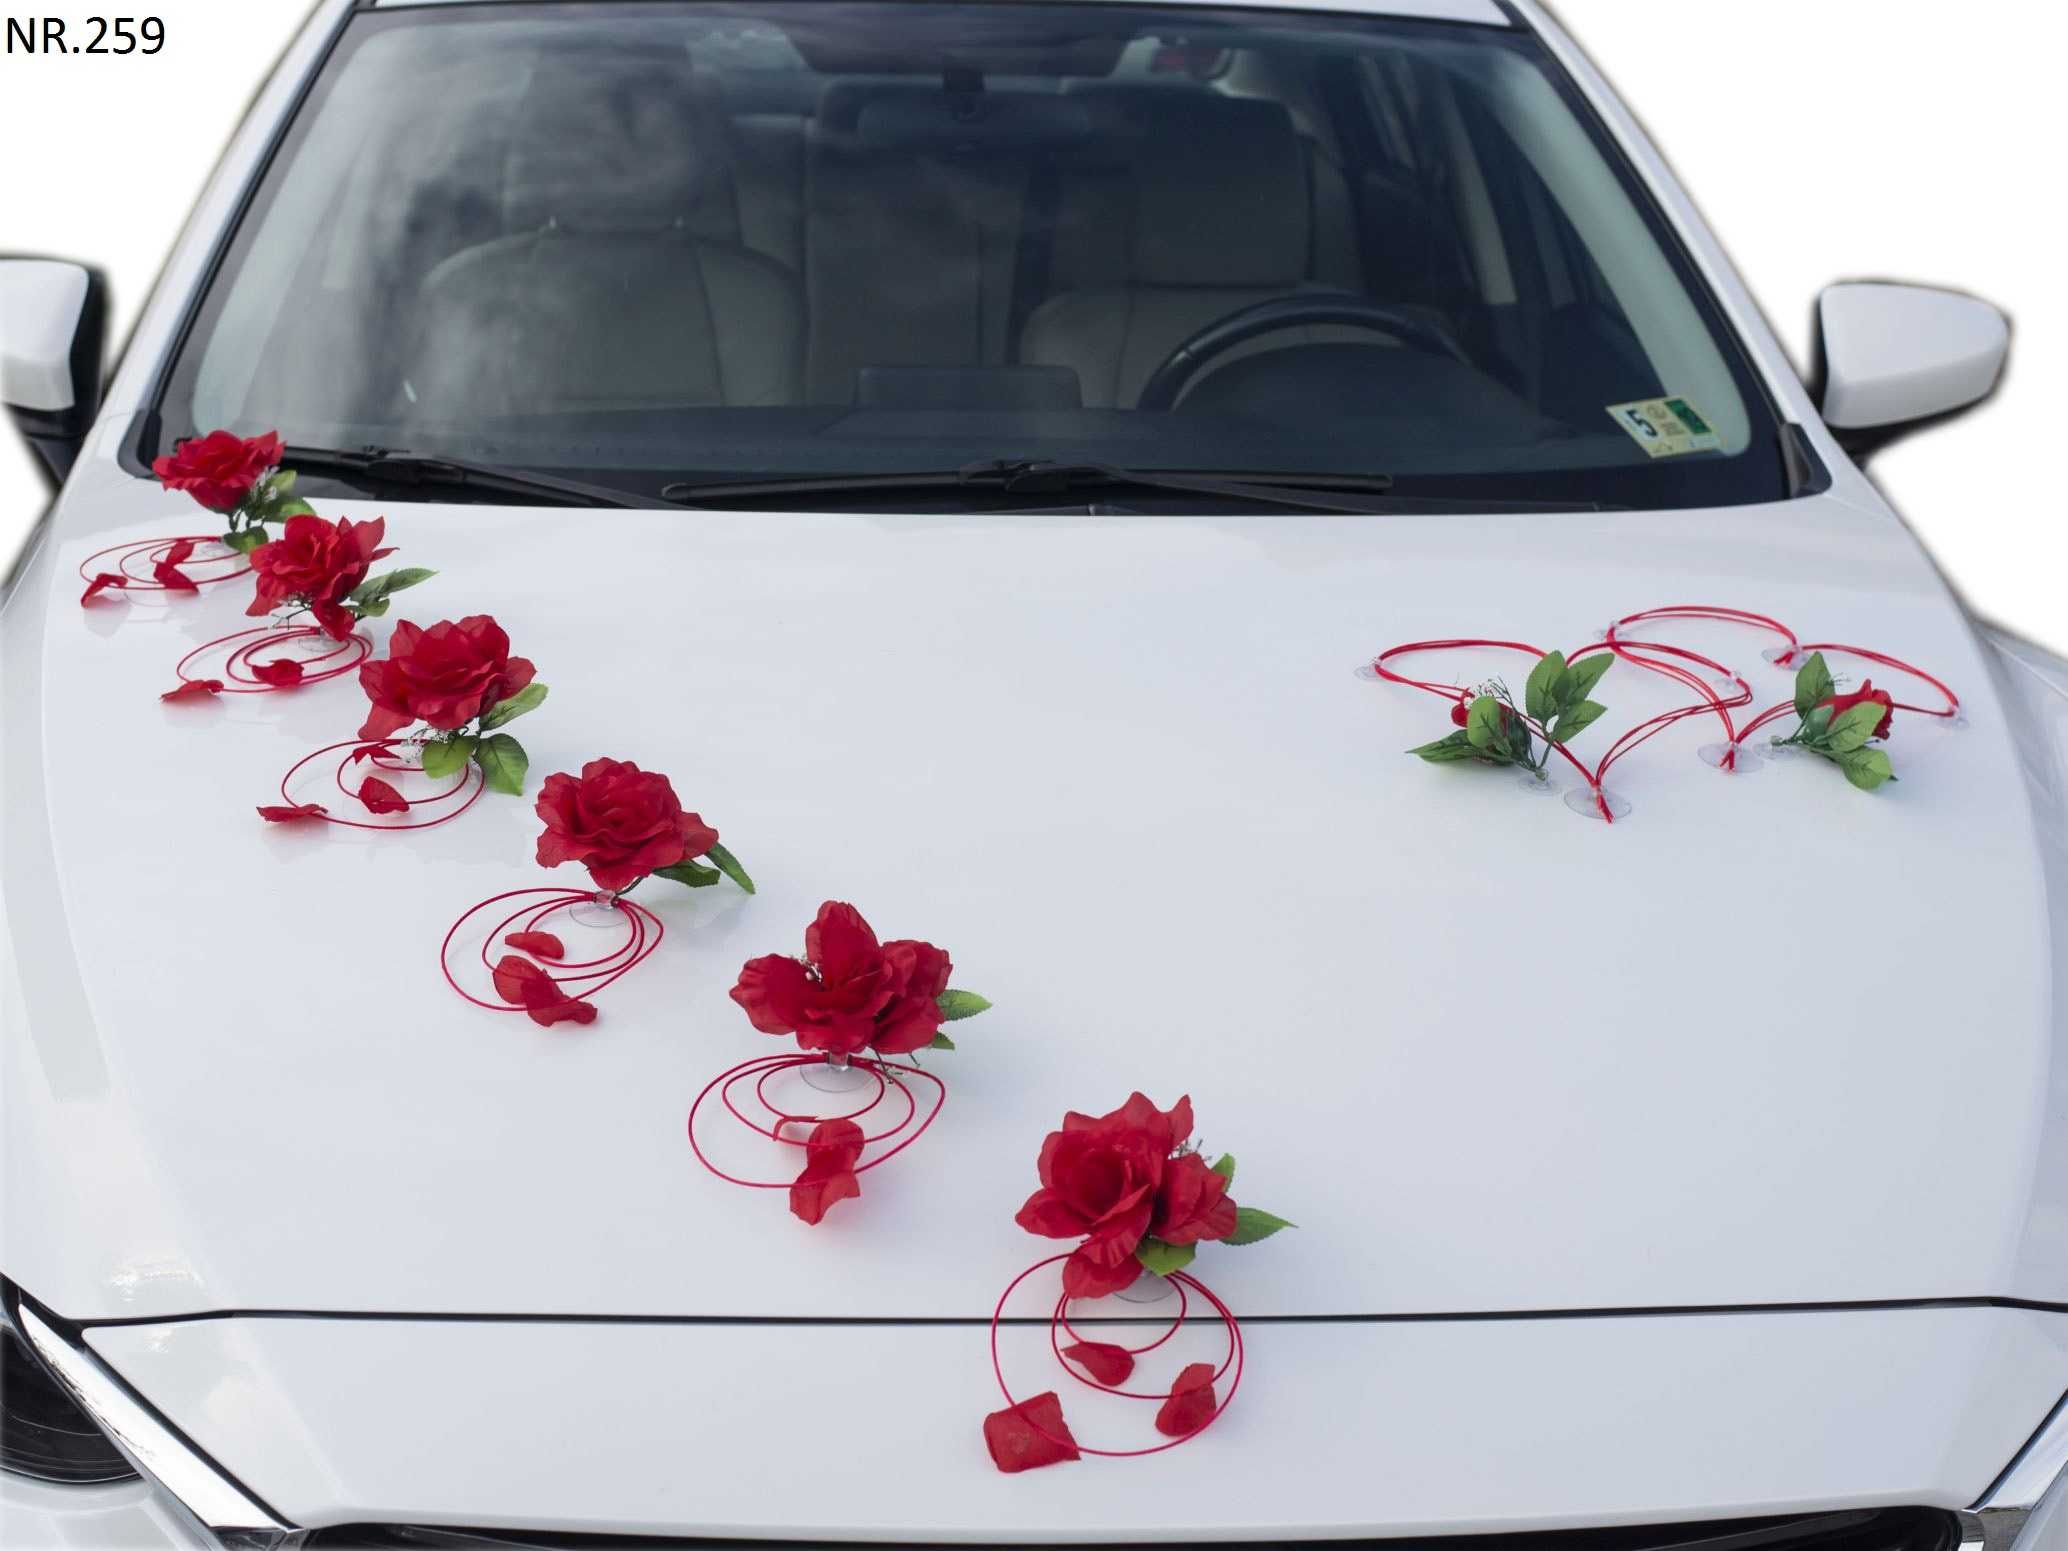 Łatwy montaż na przyssawkach DEKORACJI na samochód do ślubu 259